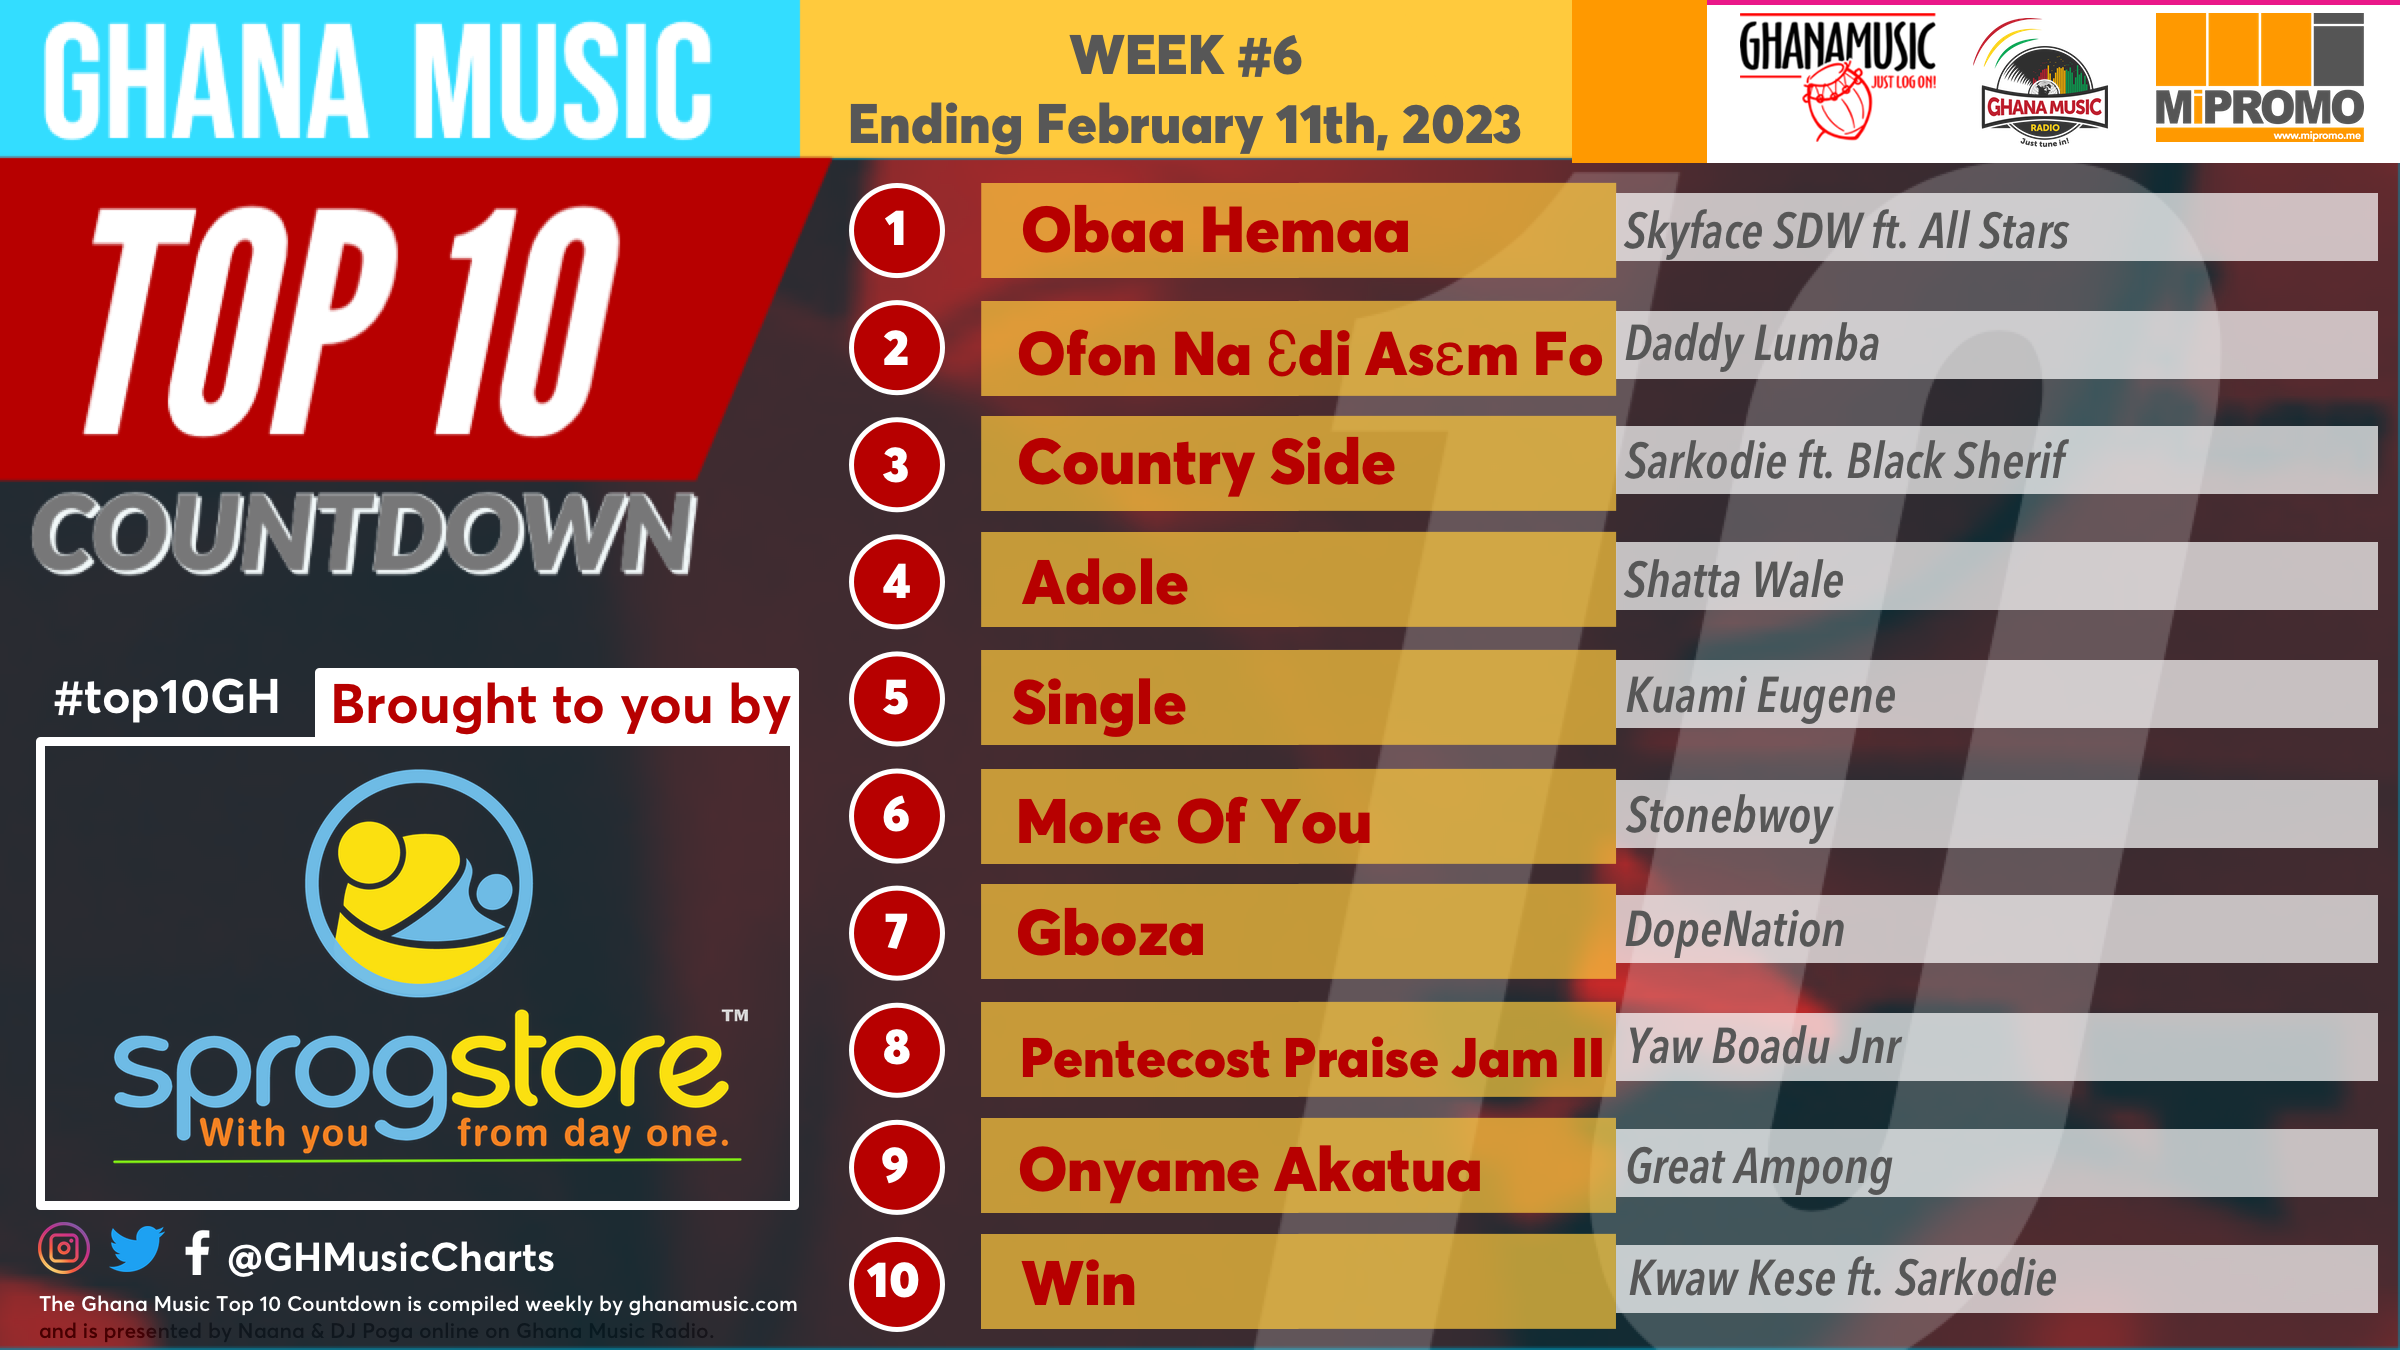 2023 Week 6: Ghana Music Top 10 Countdown